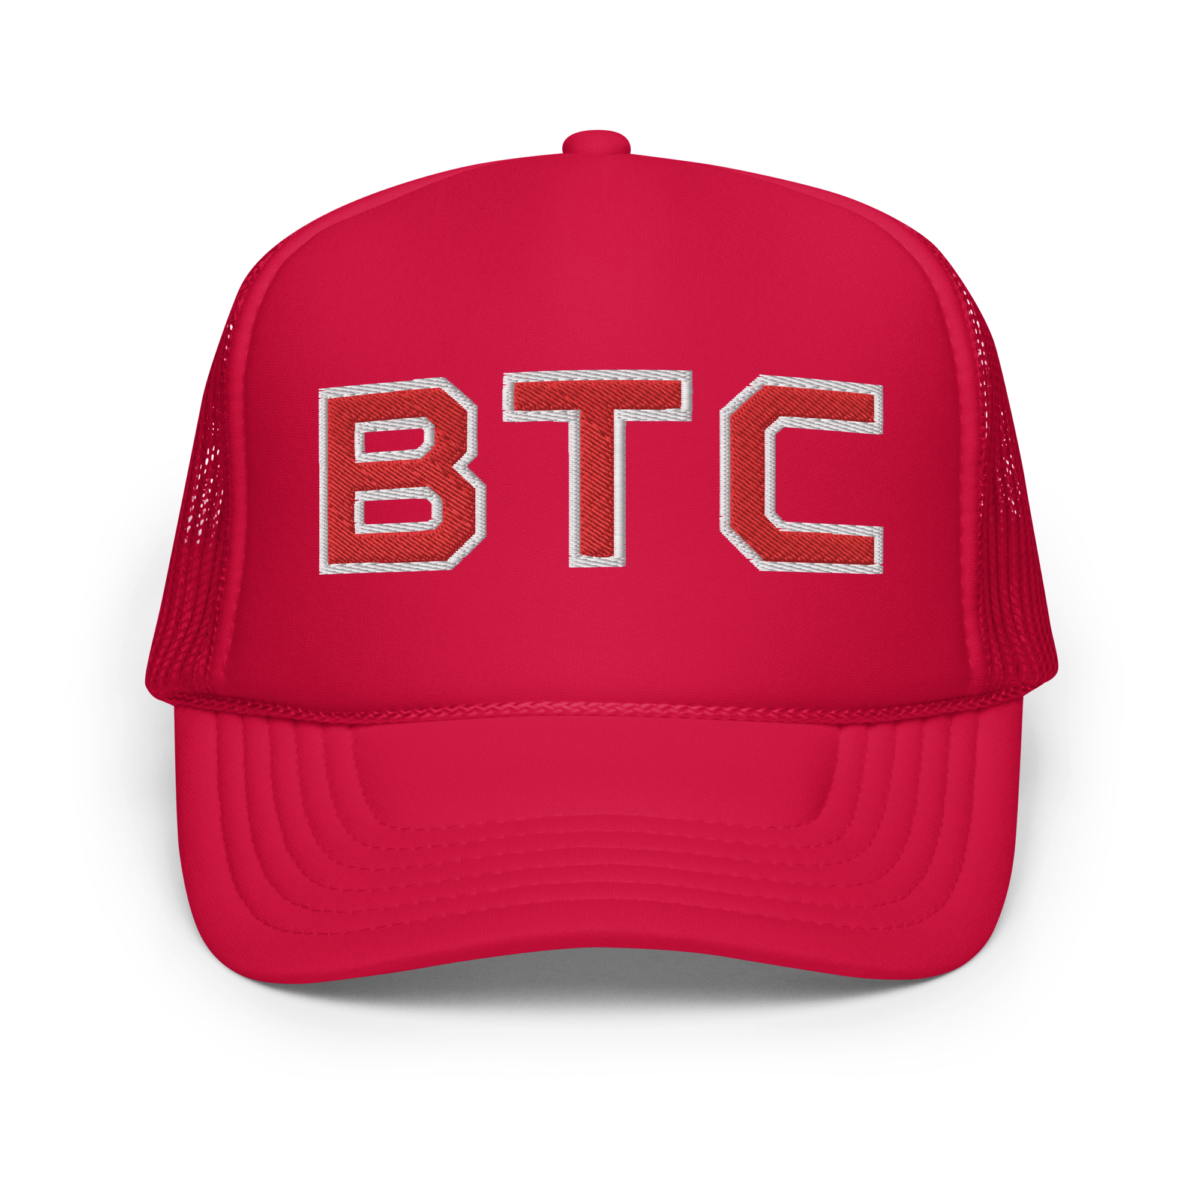 foam trucker hat red one size front 6308d7de5dbd8 - Bitcoin x BTC "Pepsi" Foam Trucker Hat